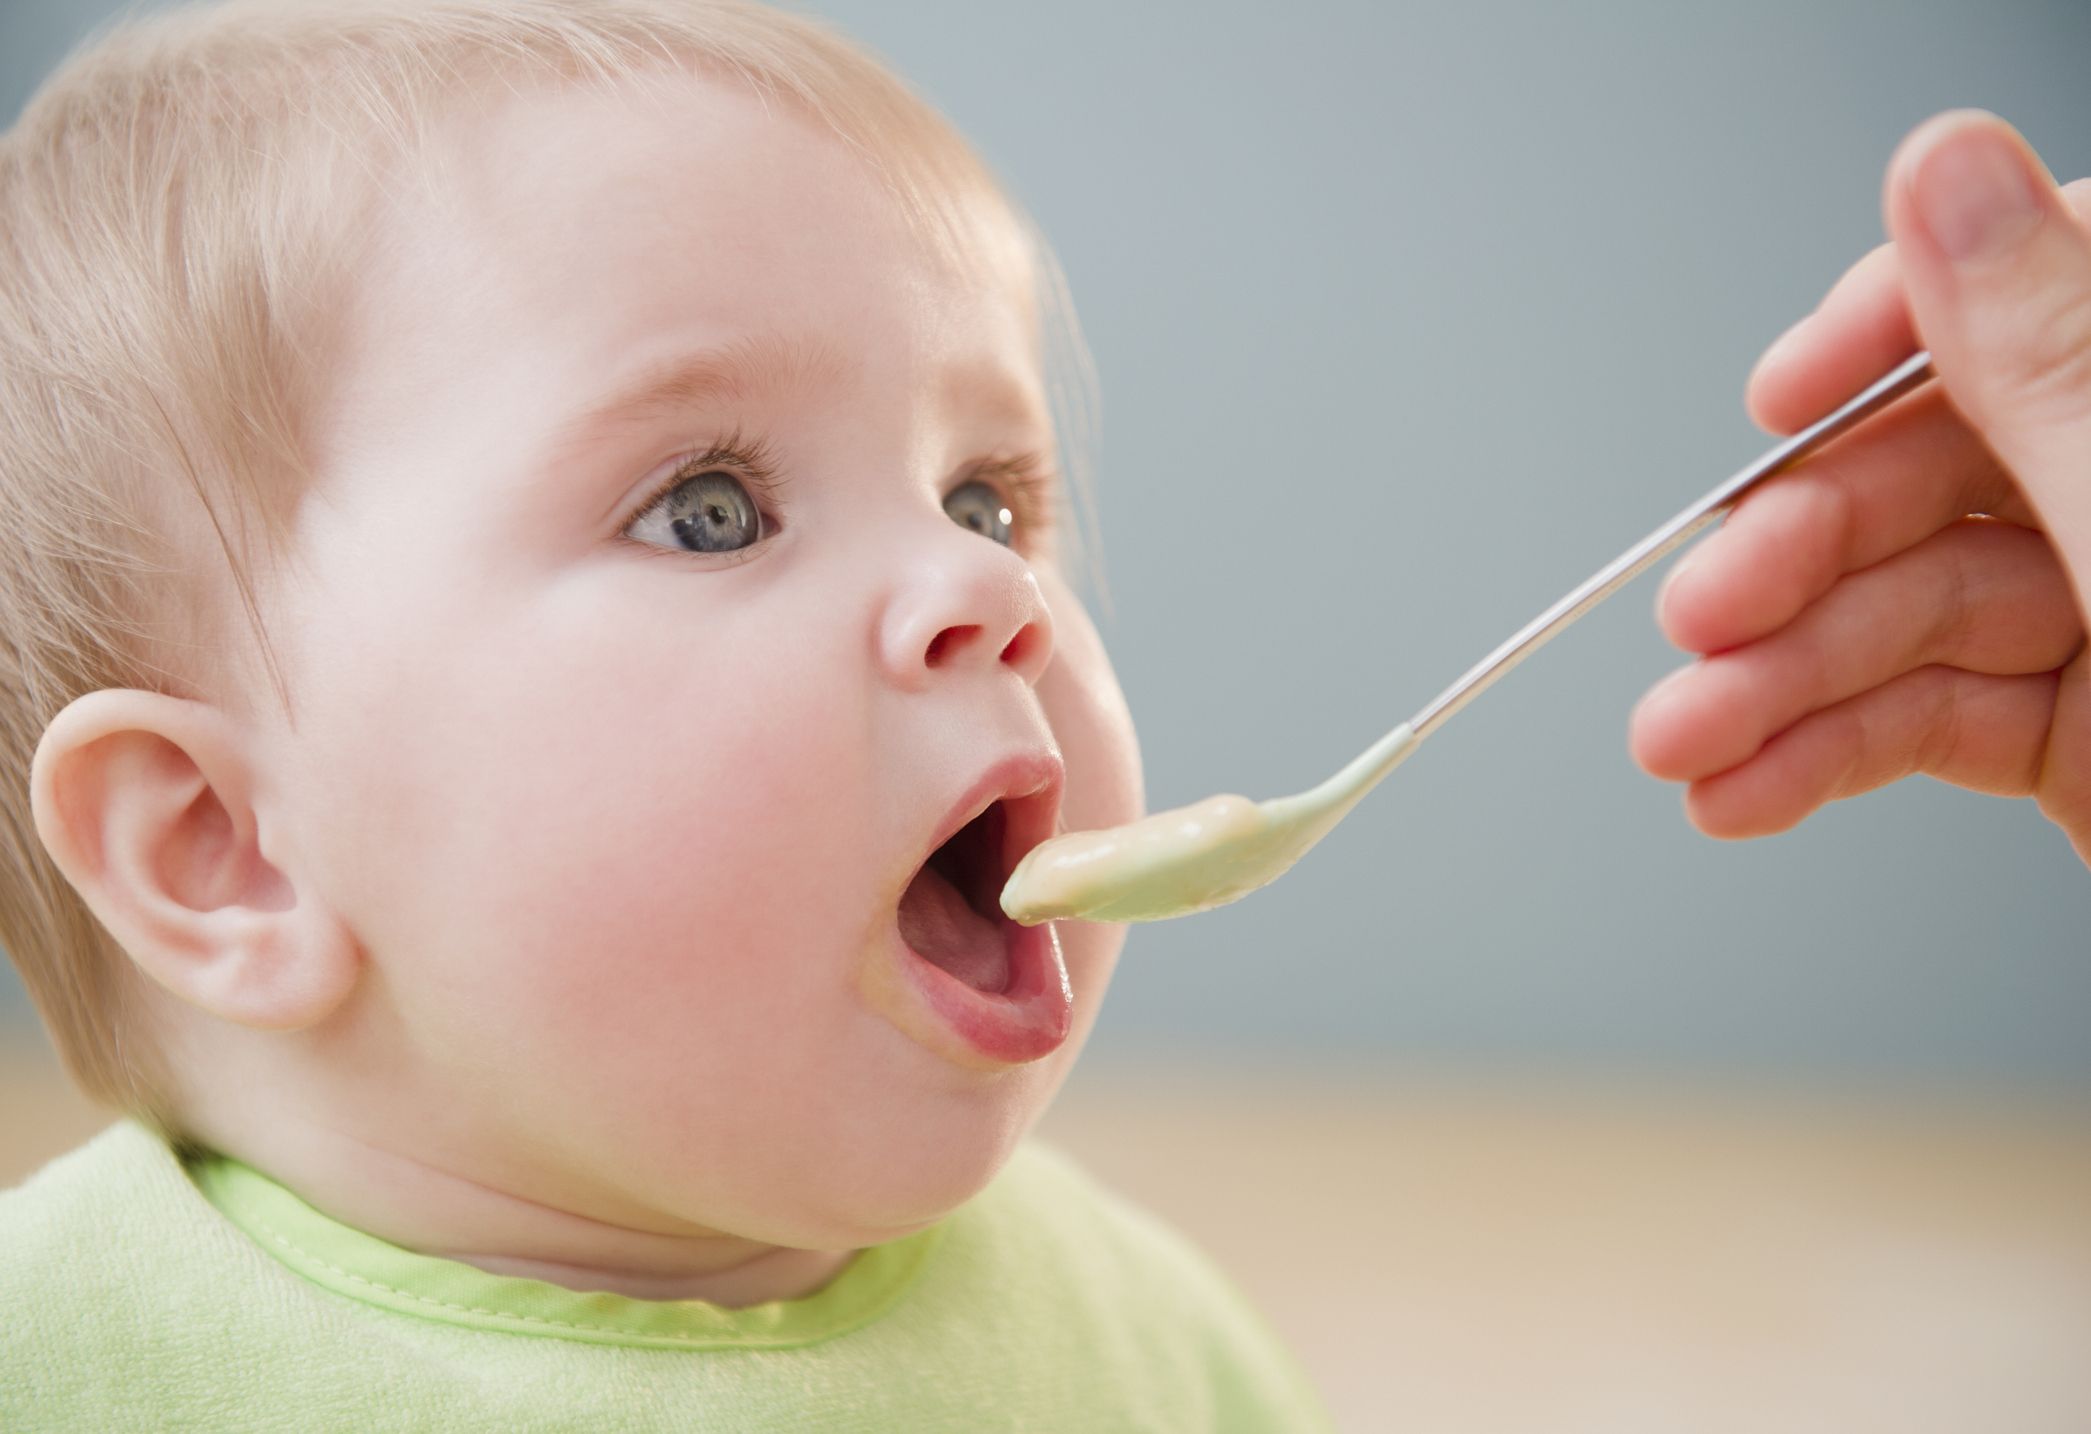 Blevit Plus Sin Gluten - Papilla de Cereales para Bebé con Harina